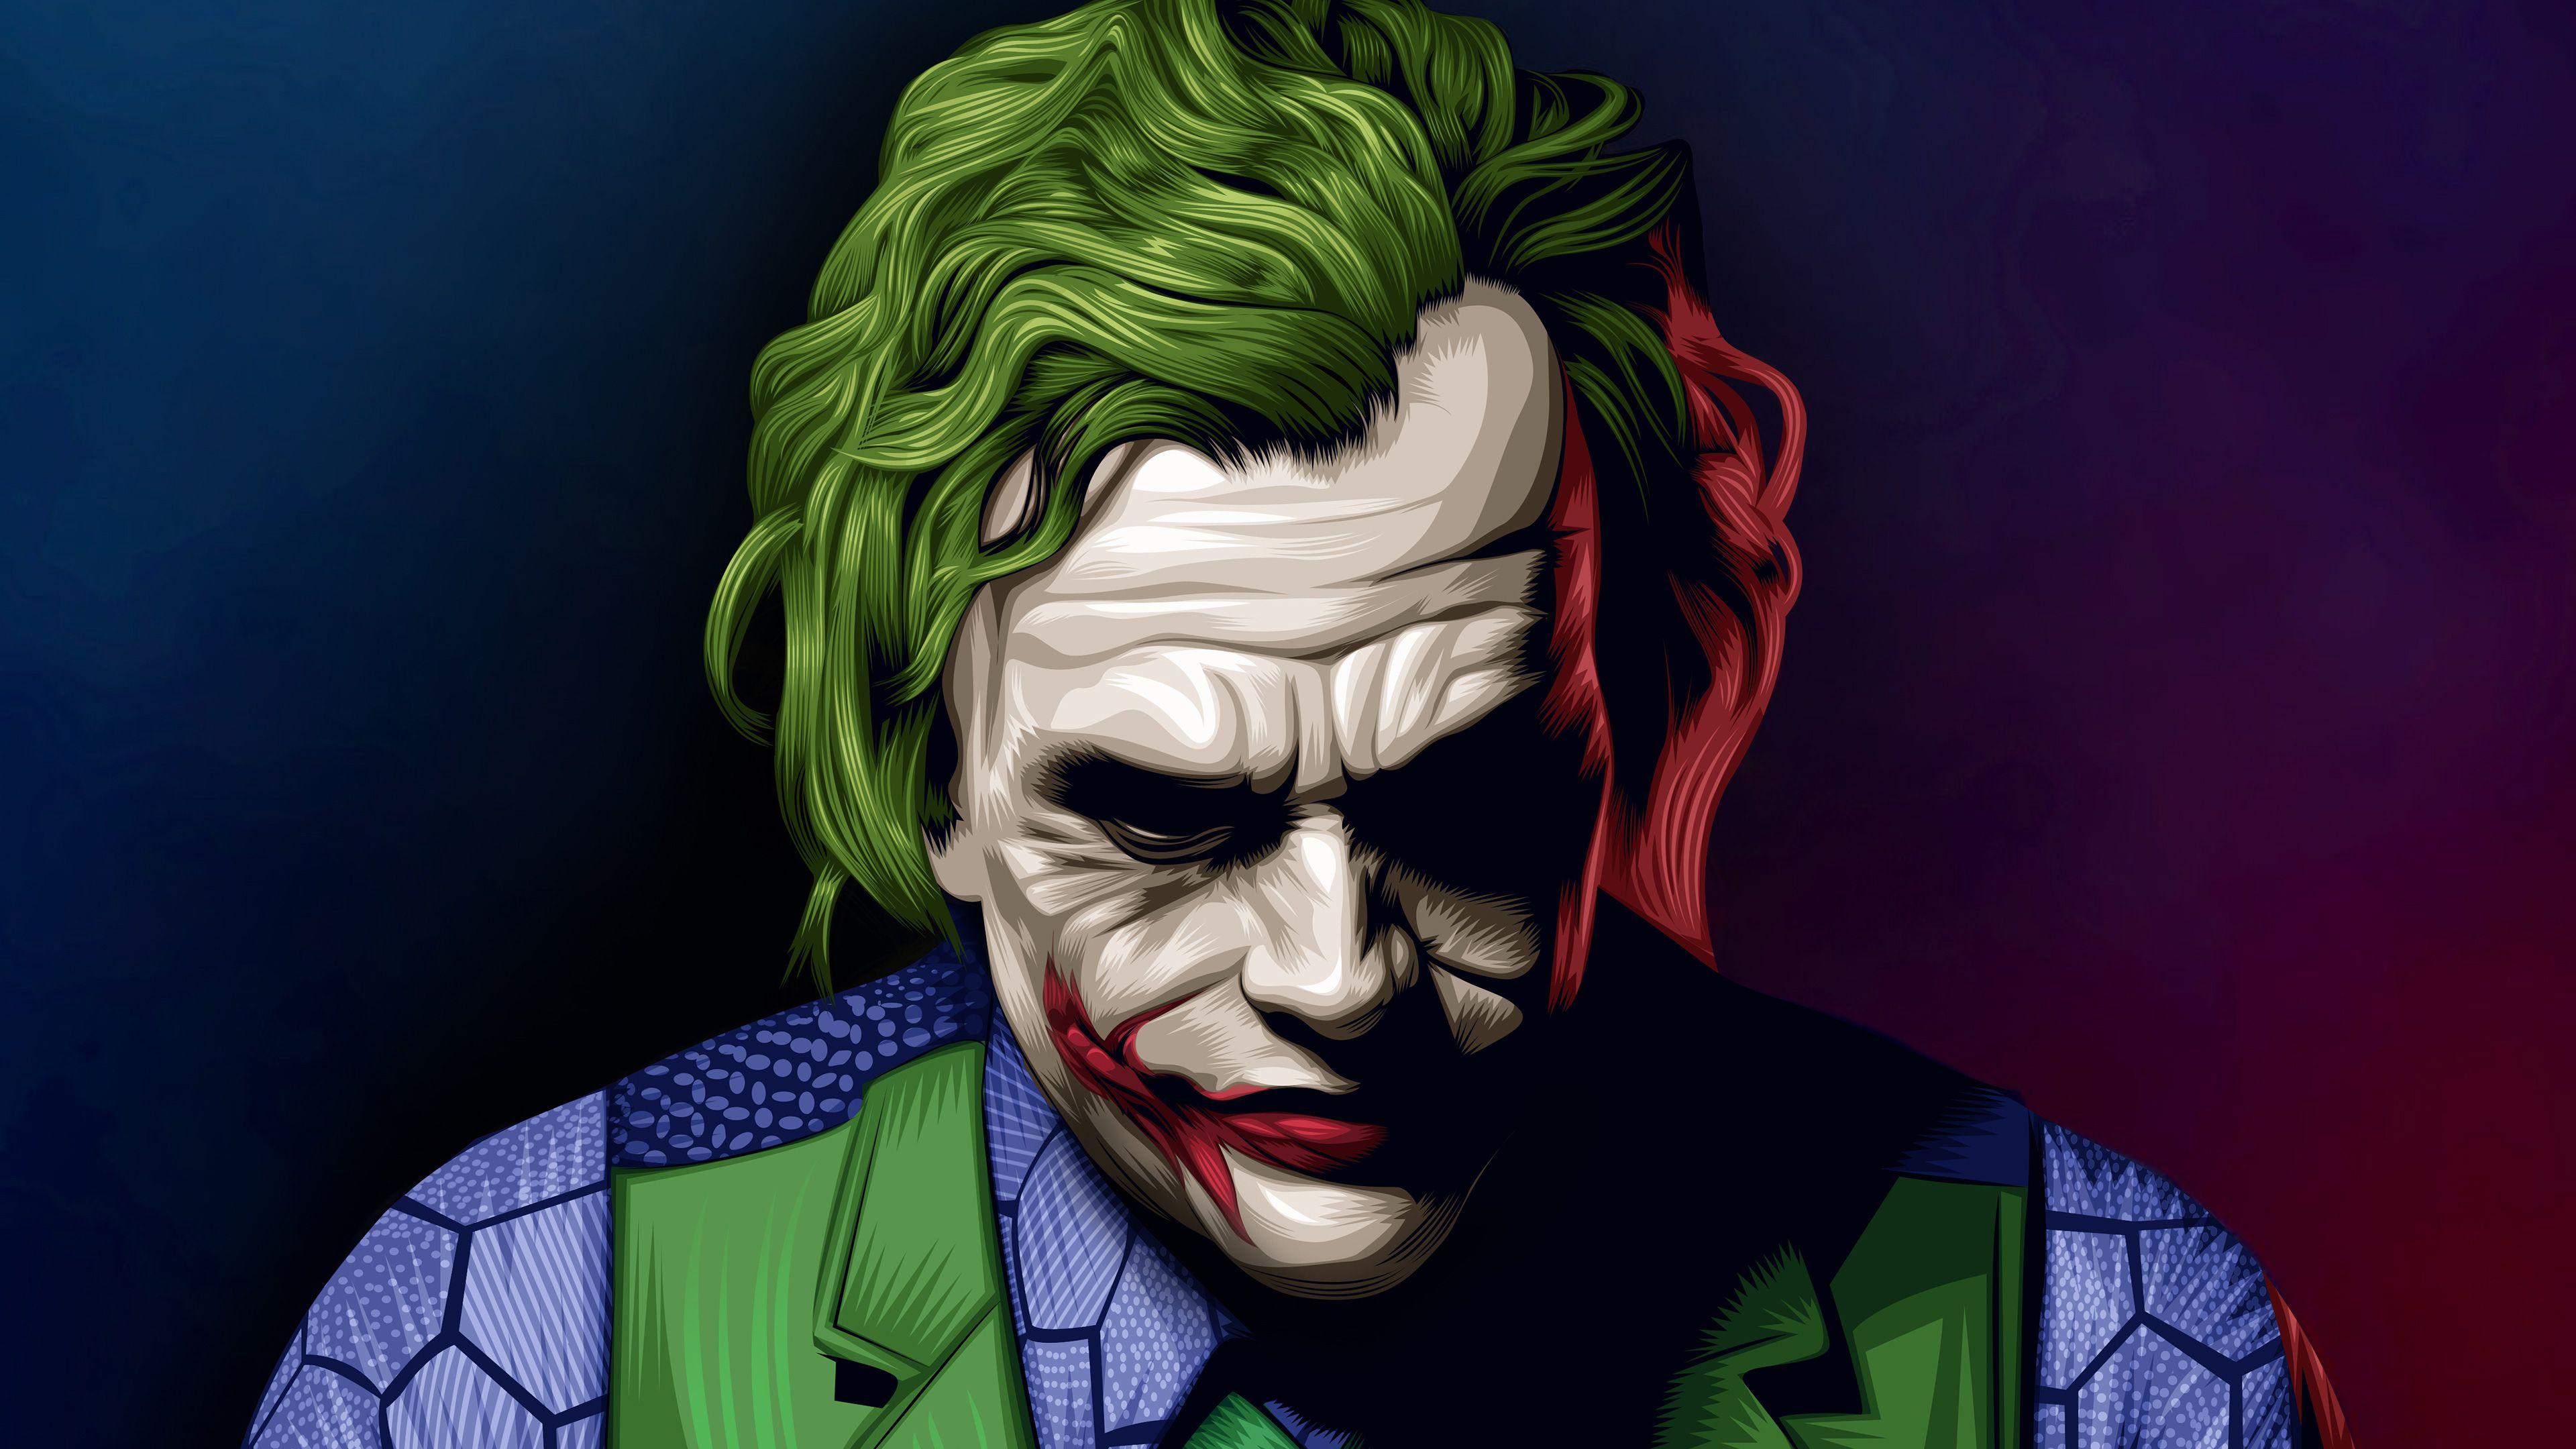 Joker Heath Ledger Illustration Superheroes Wallpaper, Joker Wallpaper, Hd Wallpaper, Digital Art. Joker Wallpaper, Joker HD Wallpaper, Batman Joker Wallpaper